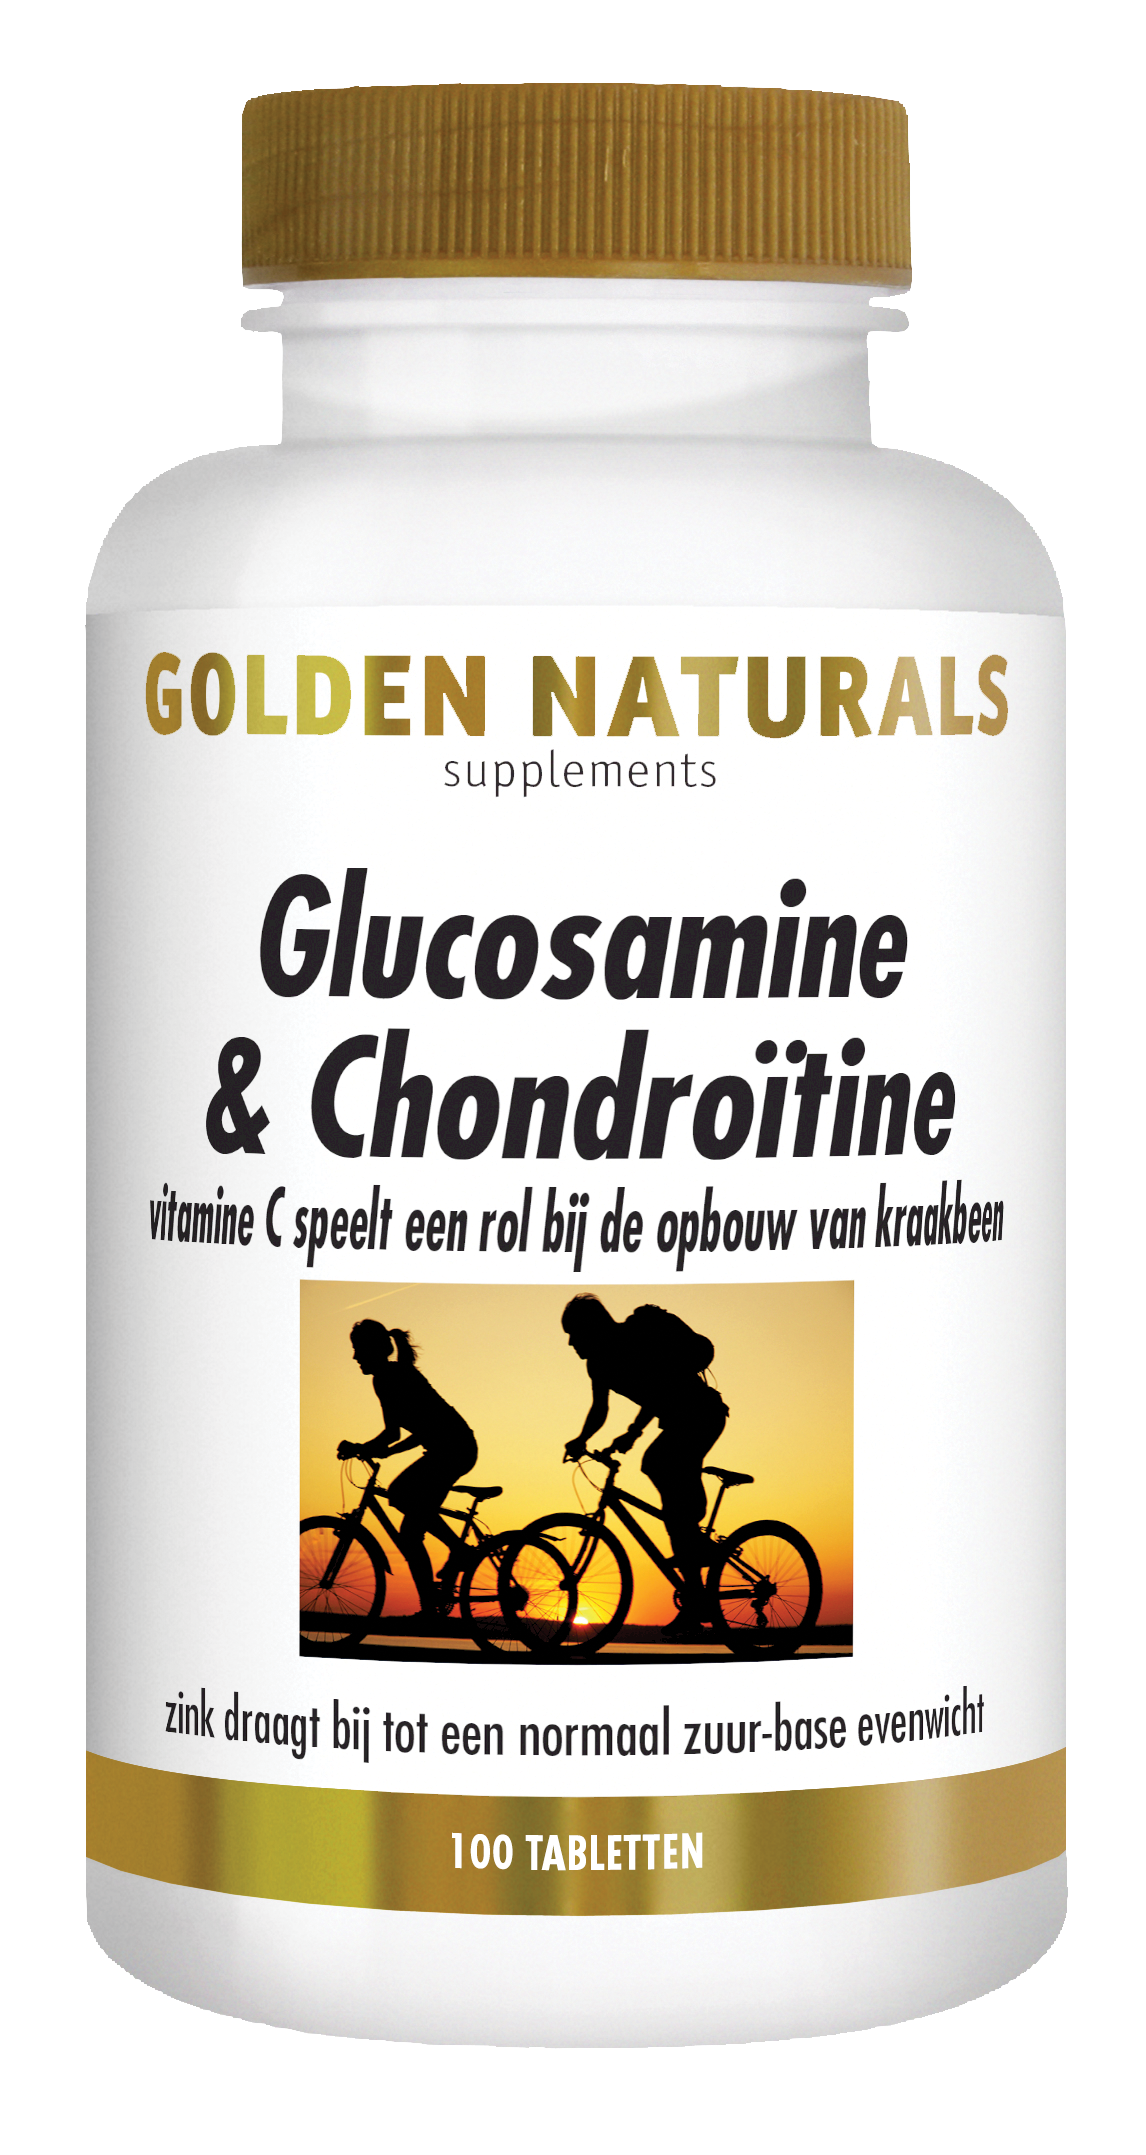 Collega Klagen Correctie Golden Naturals Glucosamine & Chondroïtine kopen? - GoldenNaturals.nl